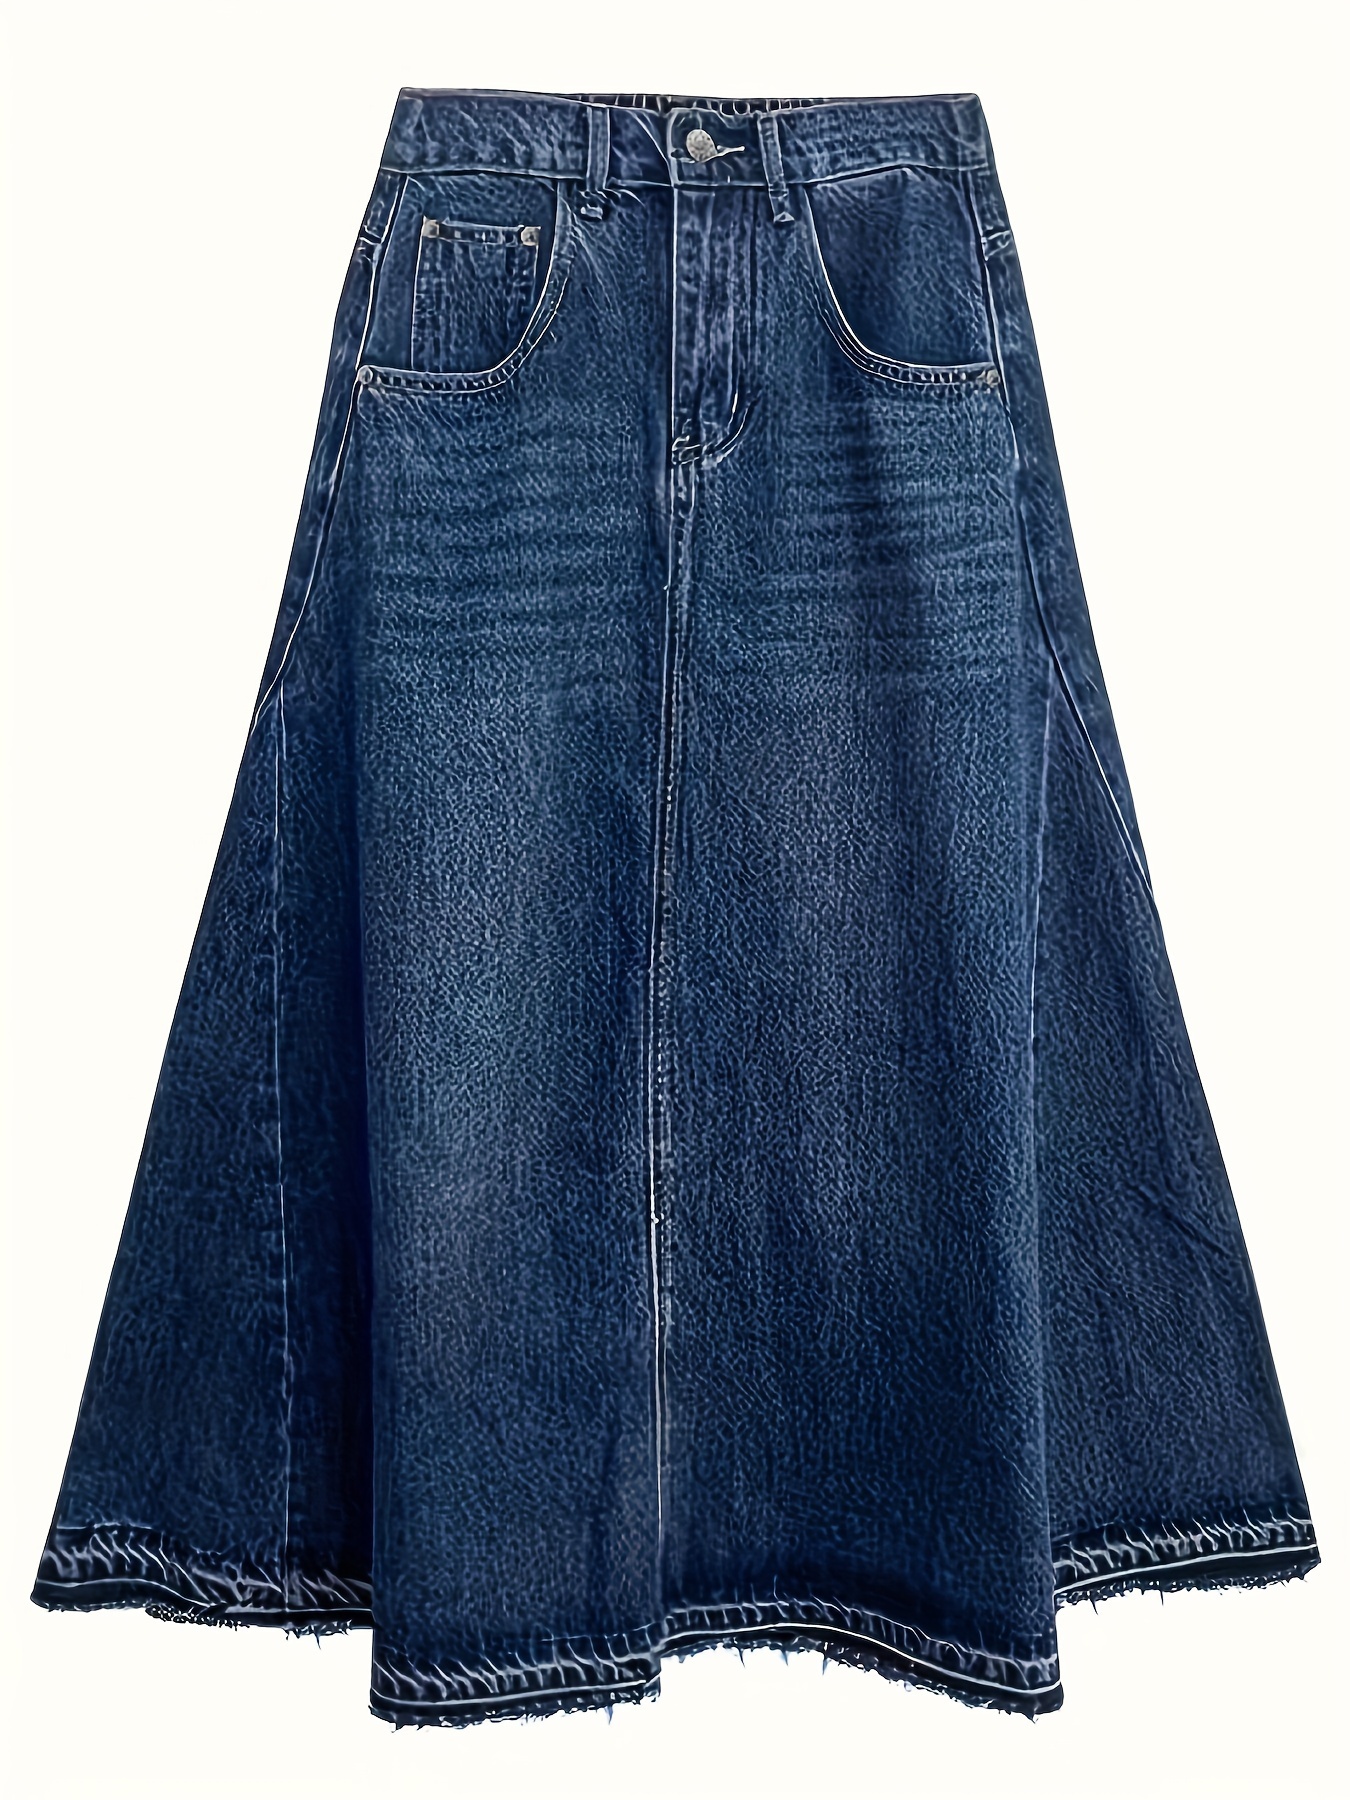 Split Front Deep Blue Slash Pocket Denim Skirt Causal Washed